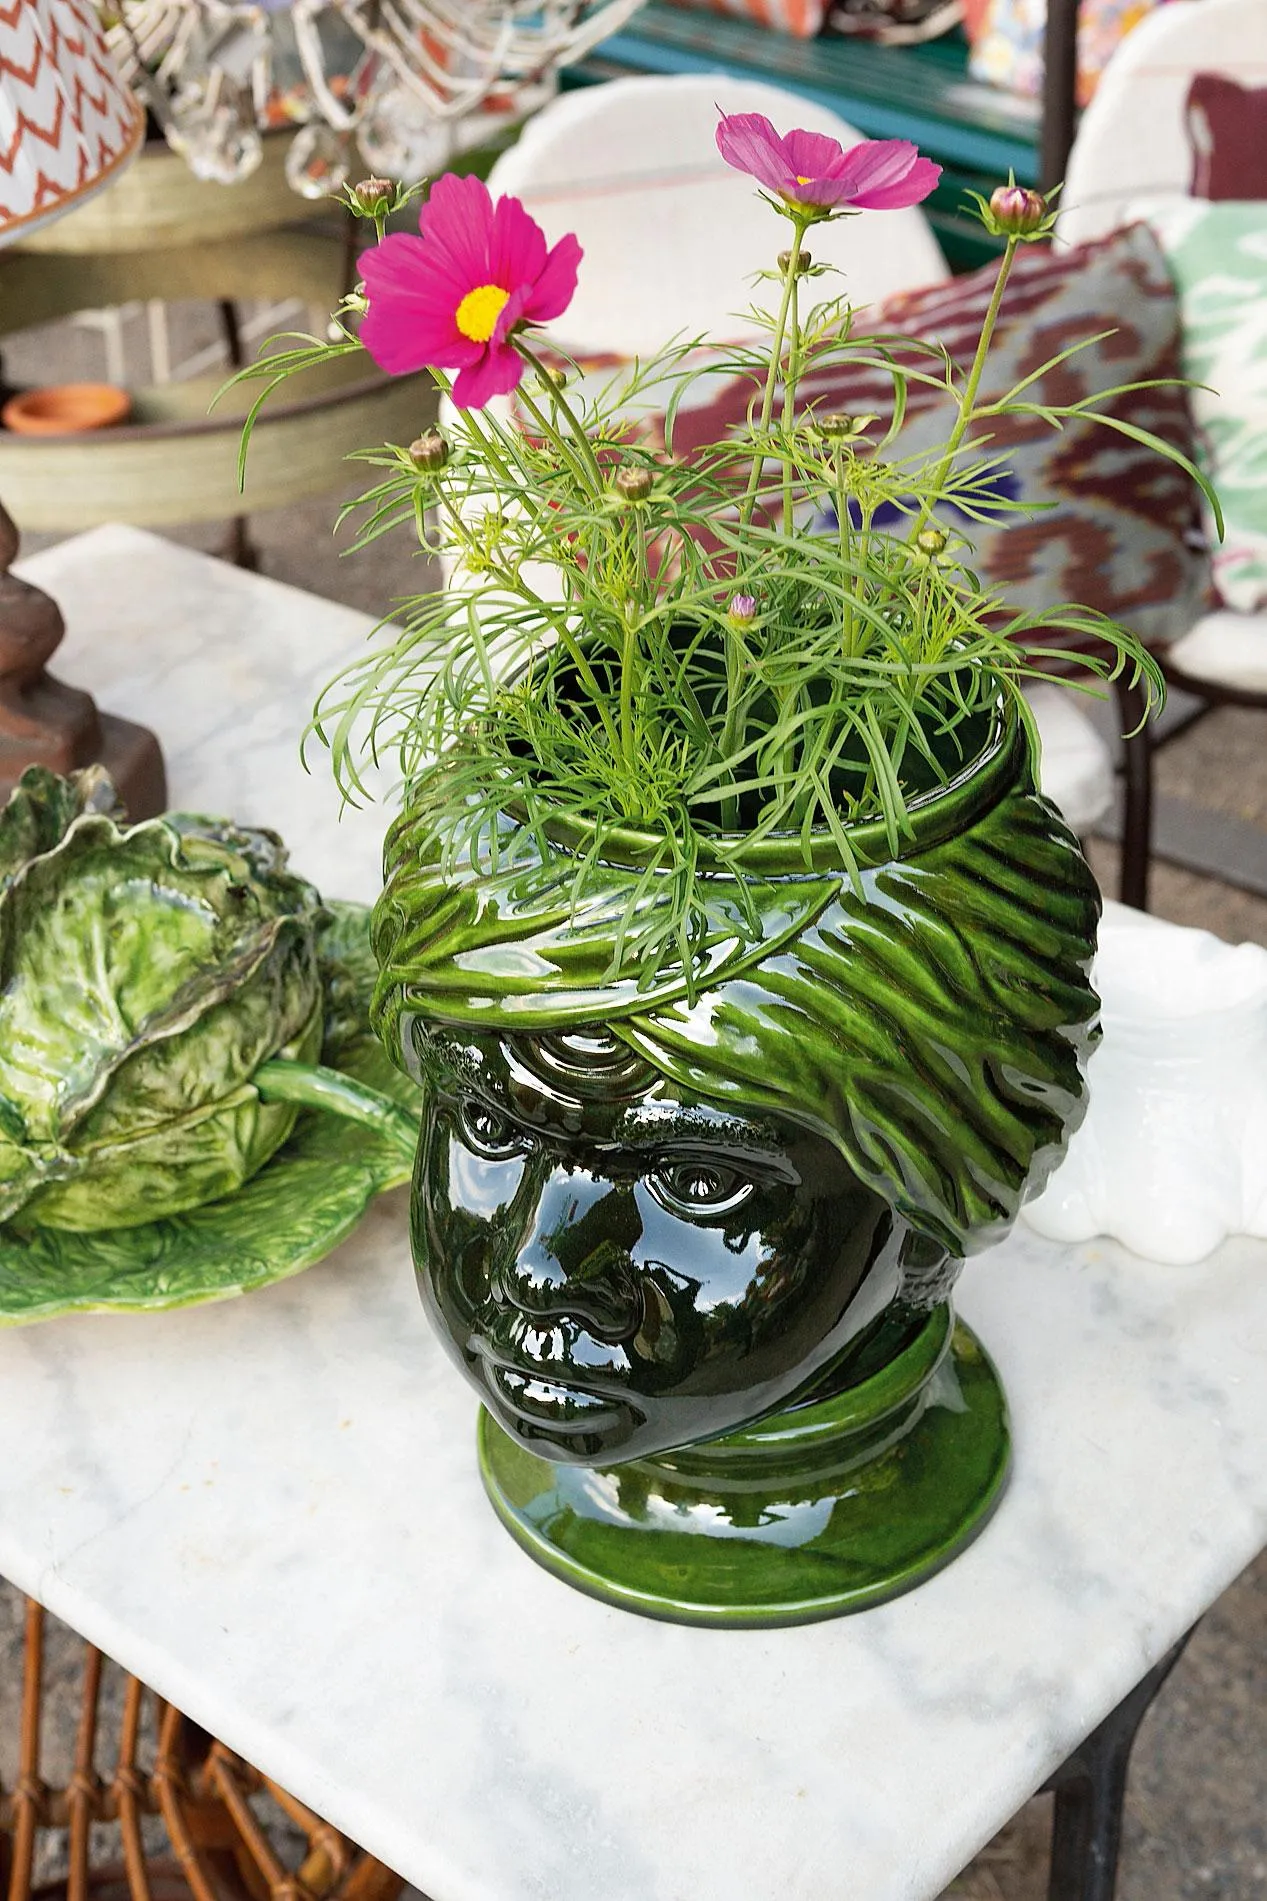 Vasi per piante, dalle mille forme e colori